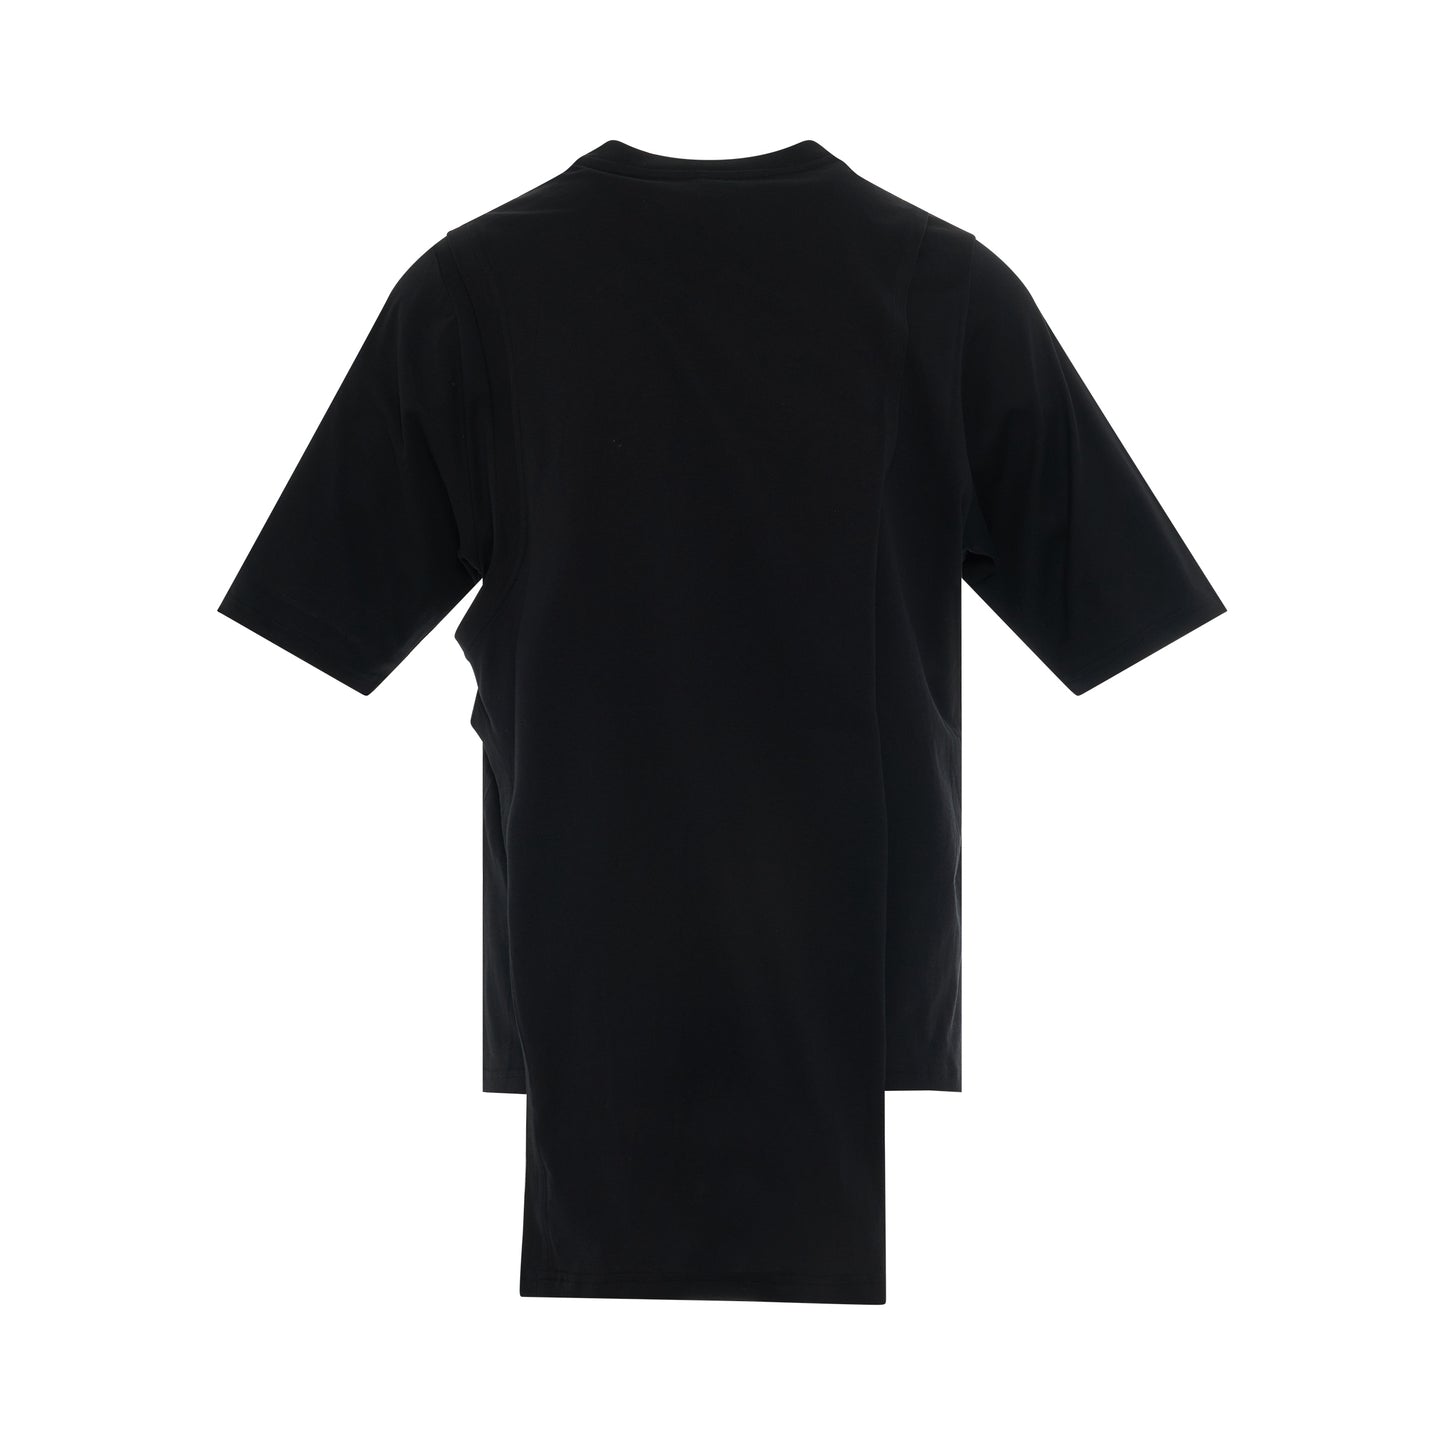 Rick Owens x Champion Toga T-Shirt in Black